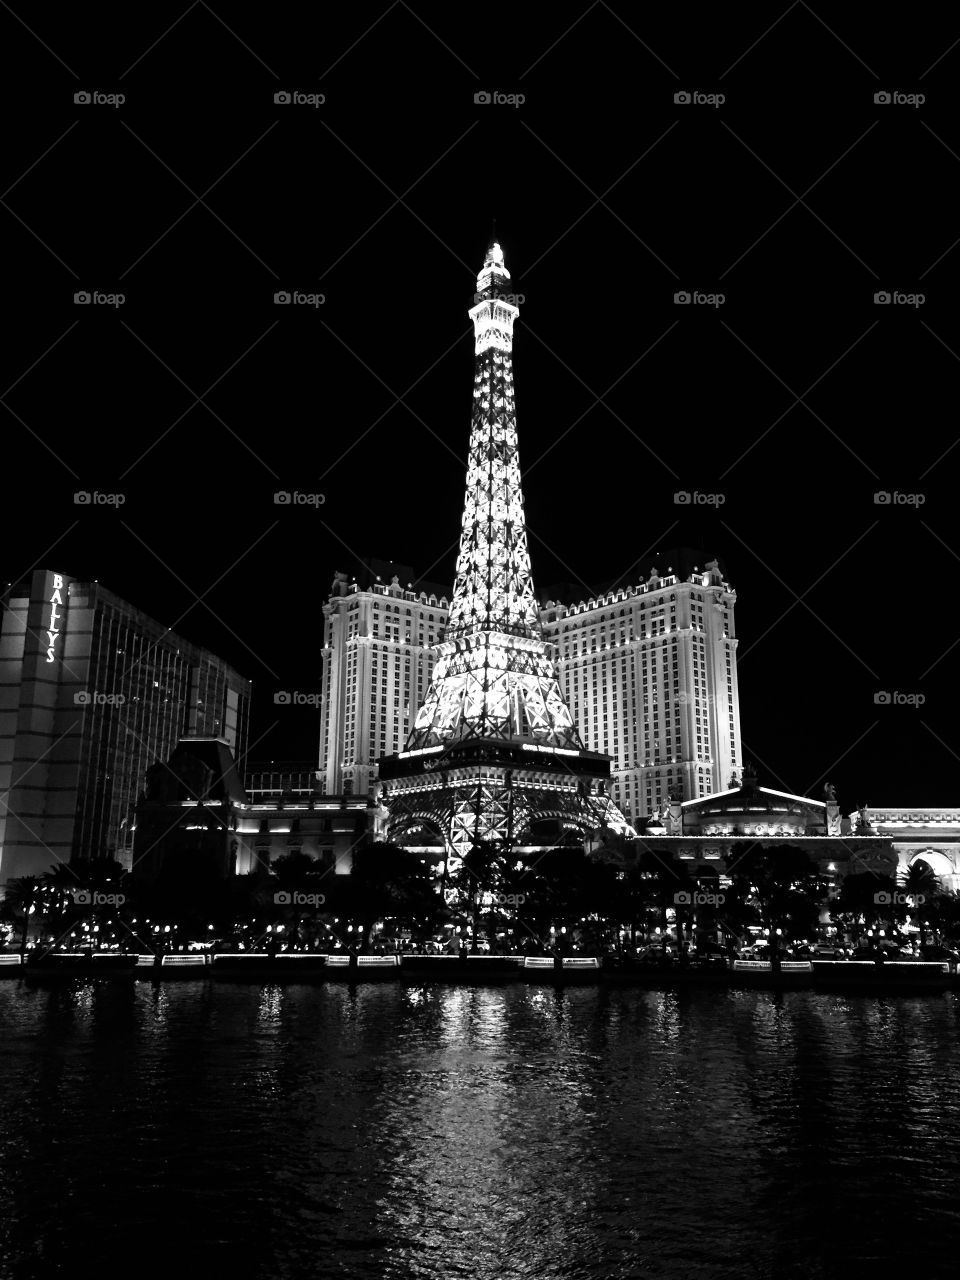 The spirit of Paris in Las Vegas 